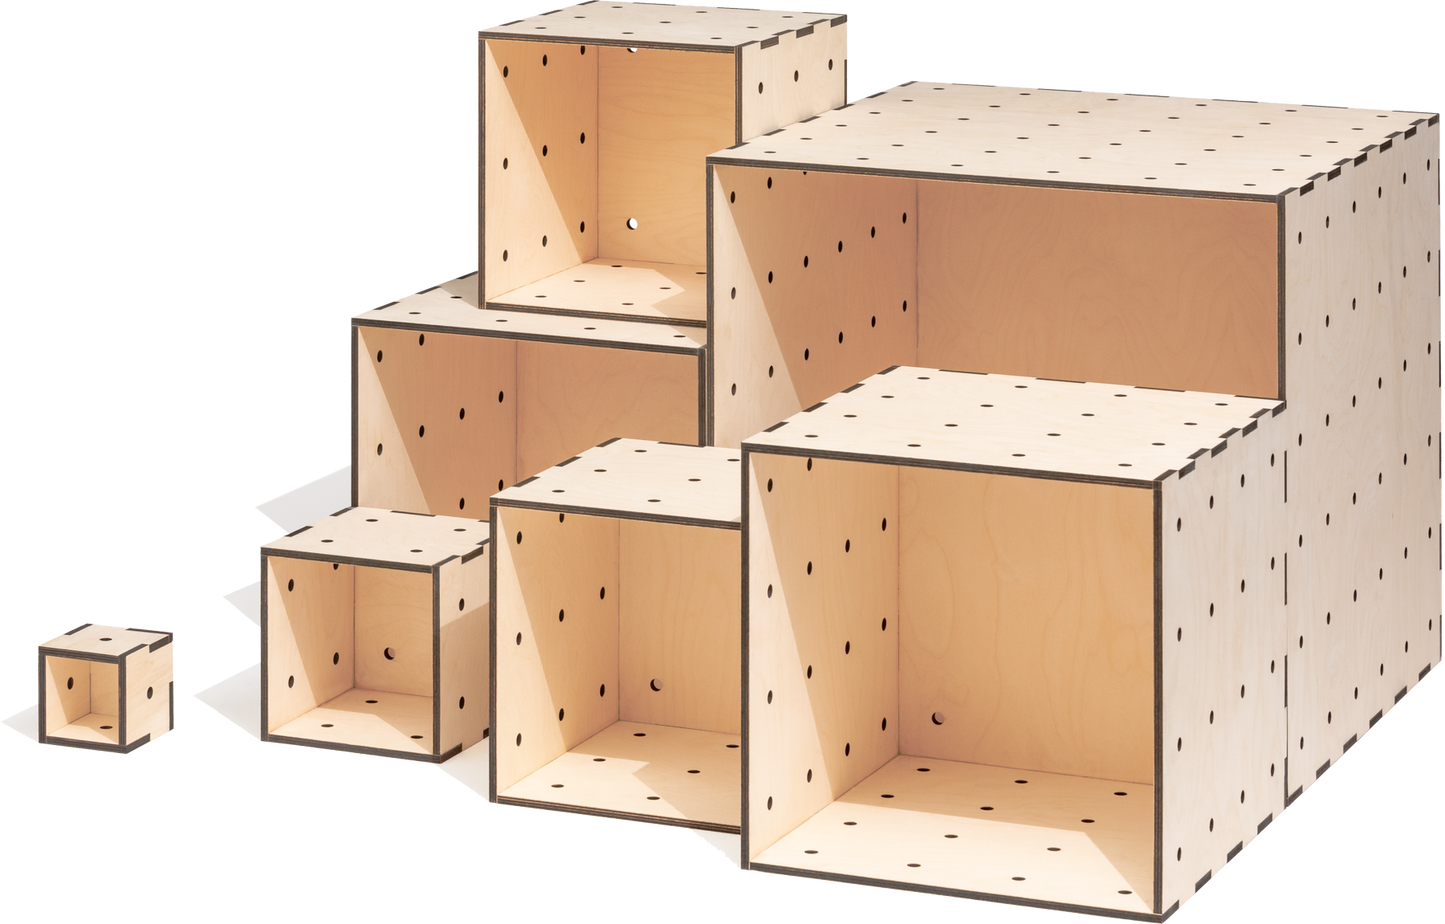 Holzkisten im Würfelformat als modulares Stapelregal